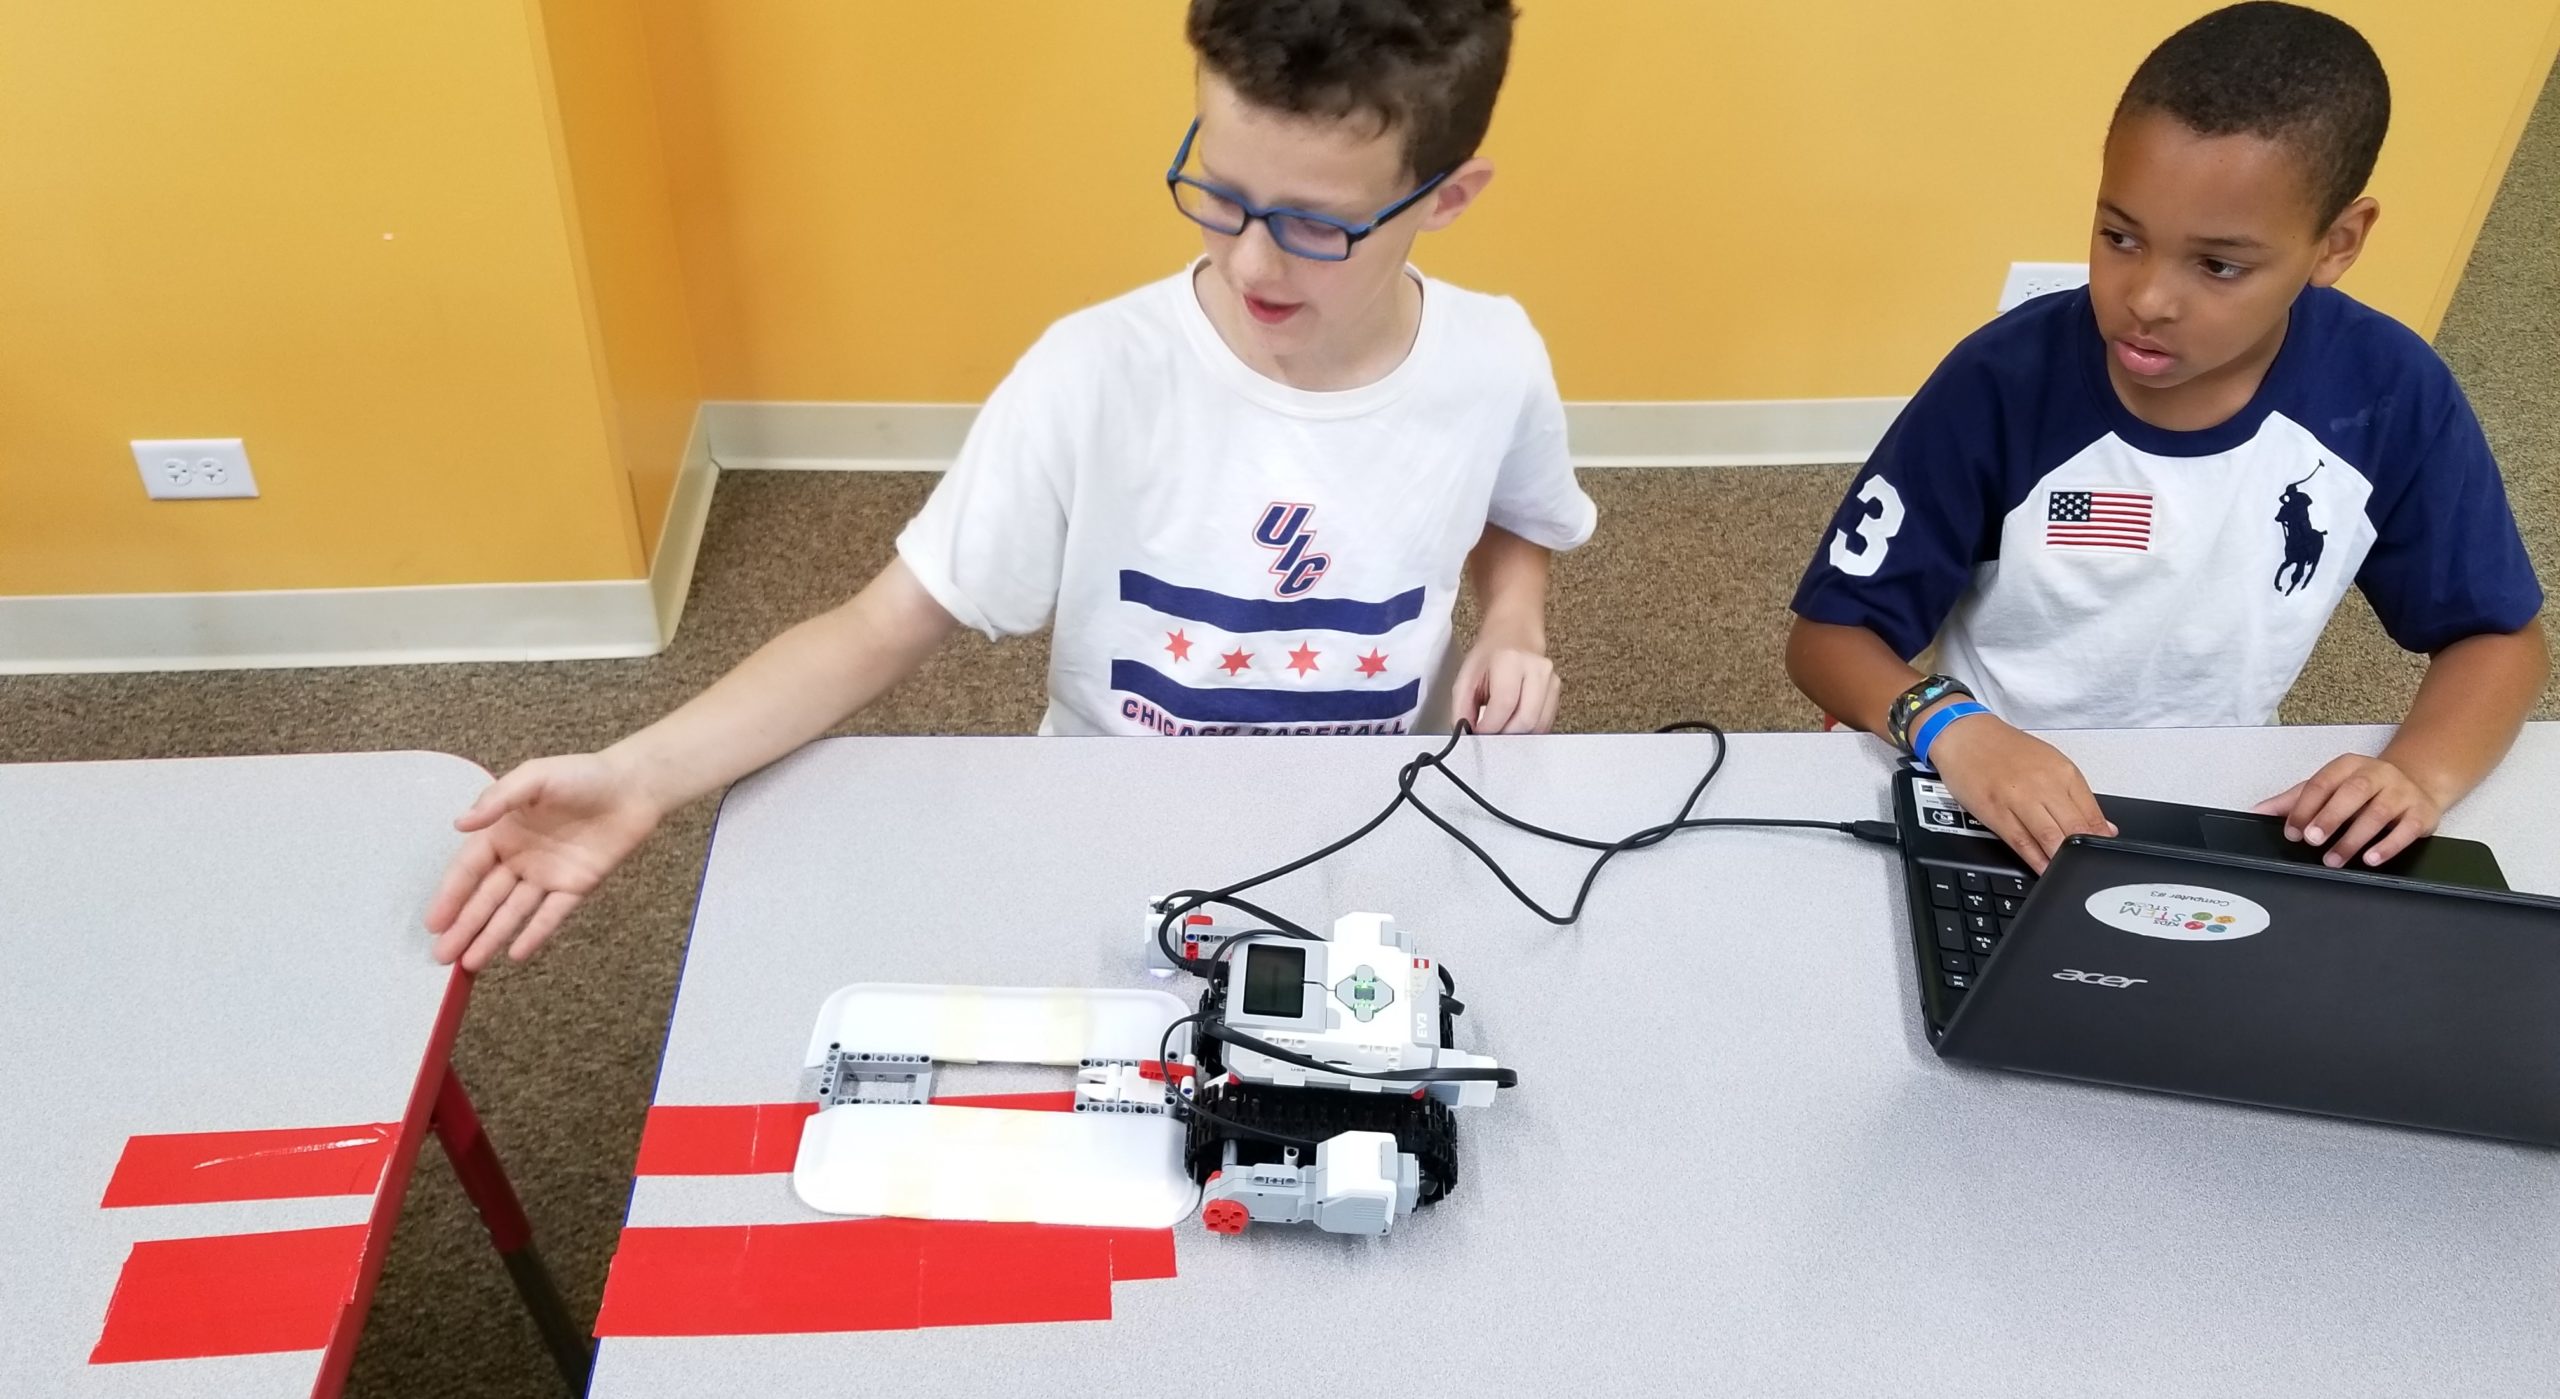 Schaumburg Kids Build-a-Bot Party